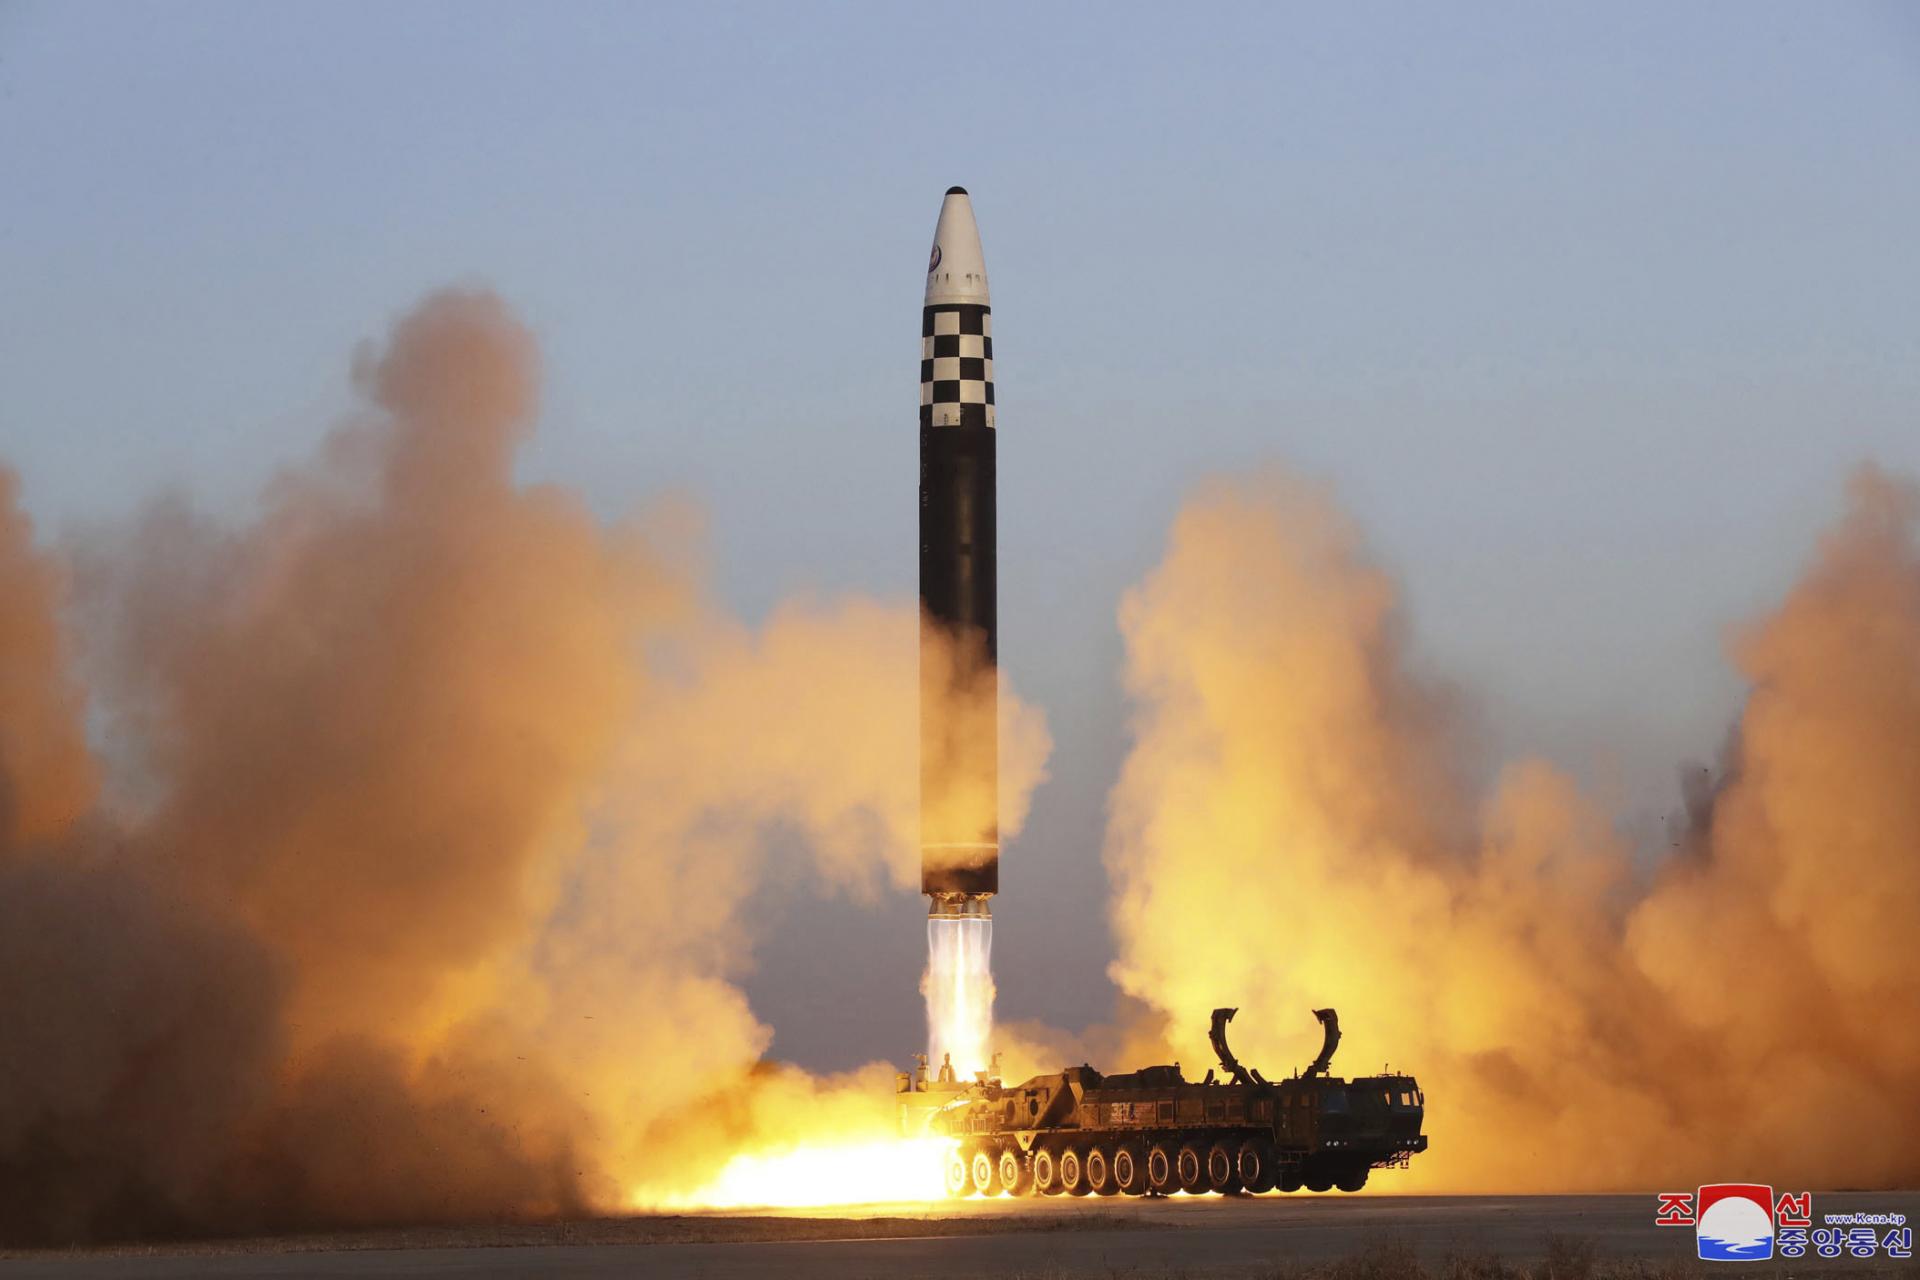 Severná Kórea odpálila ďalšiu balistickú raketu, informuje Soul